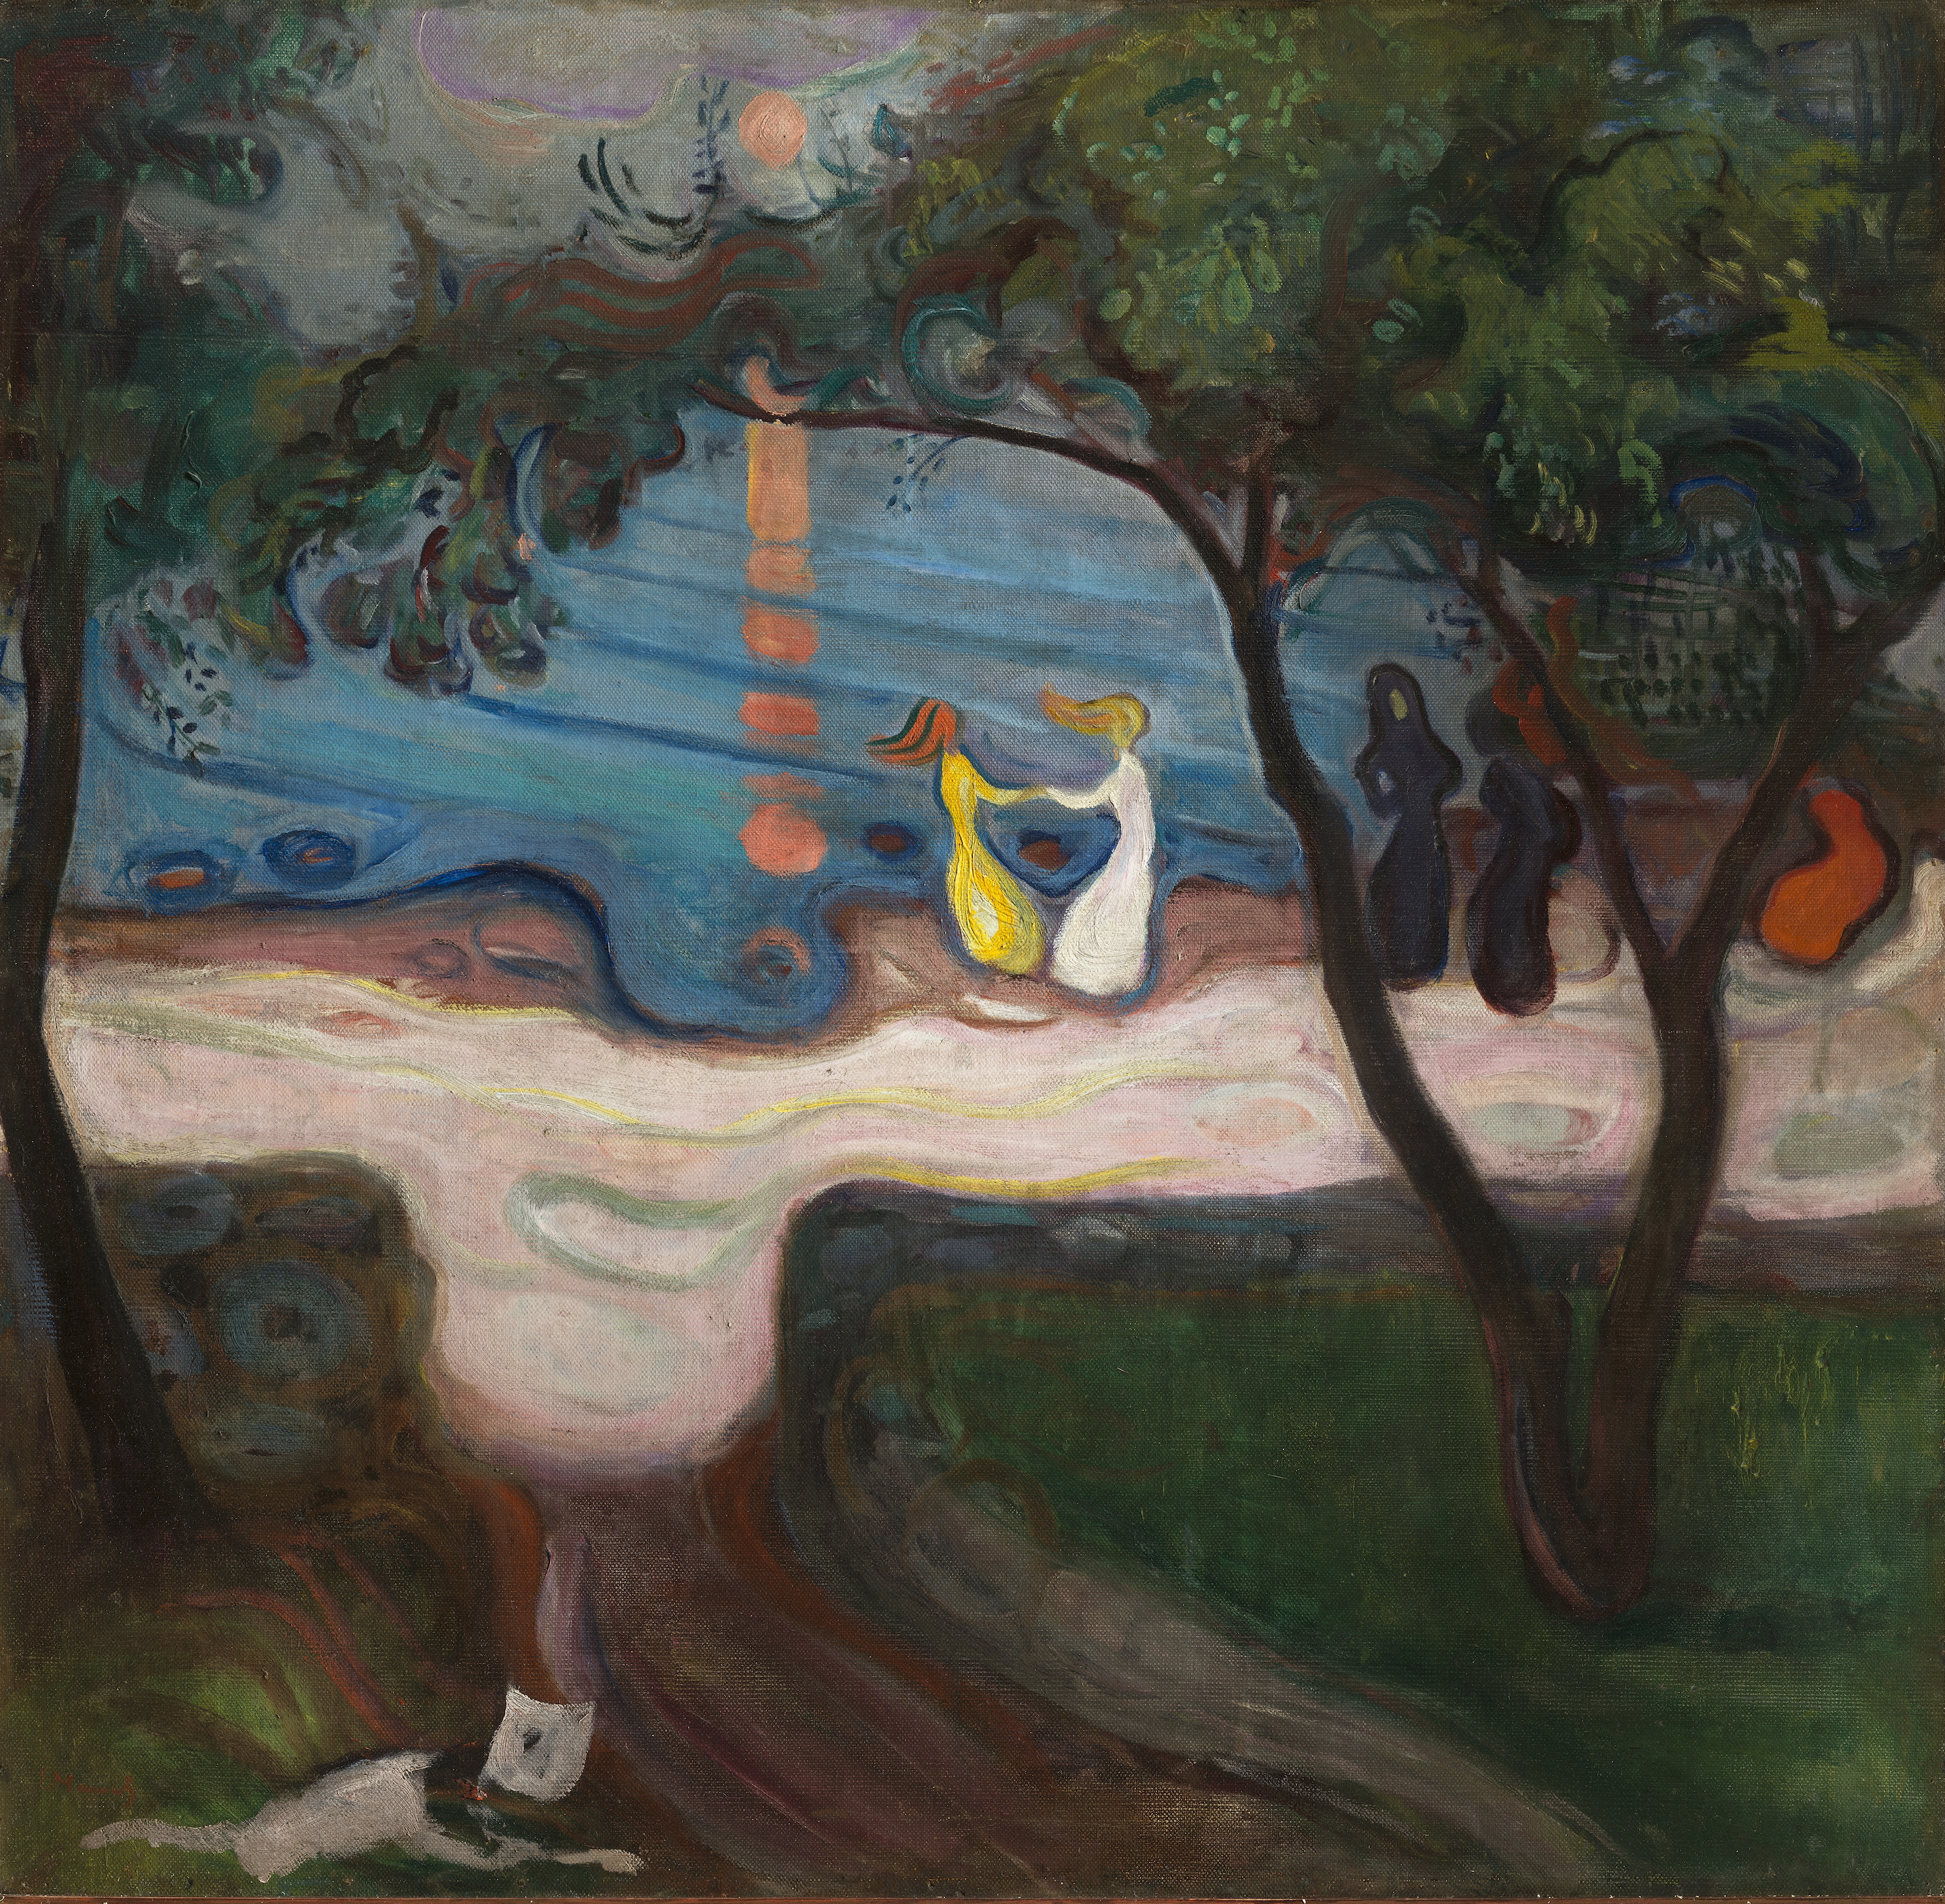 Danza sulla riva del lago by Edvard Munch - 1900 - 95,5 x 98,5 cm 